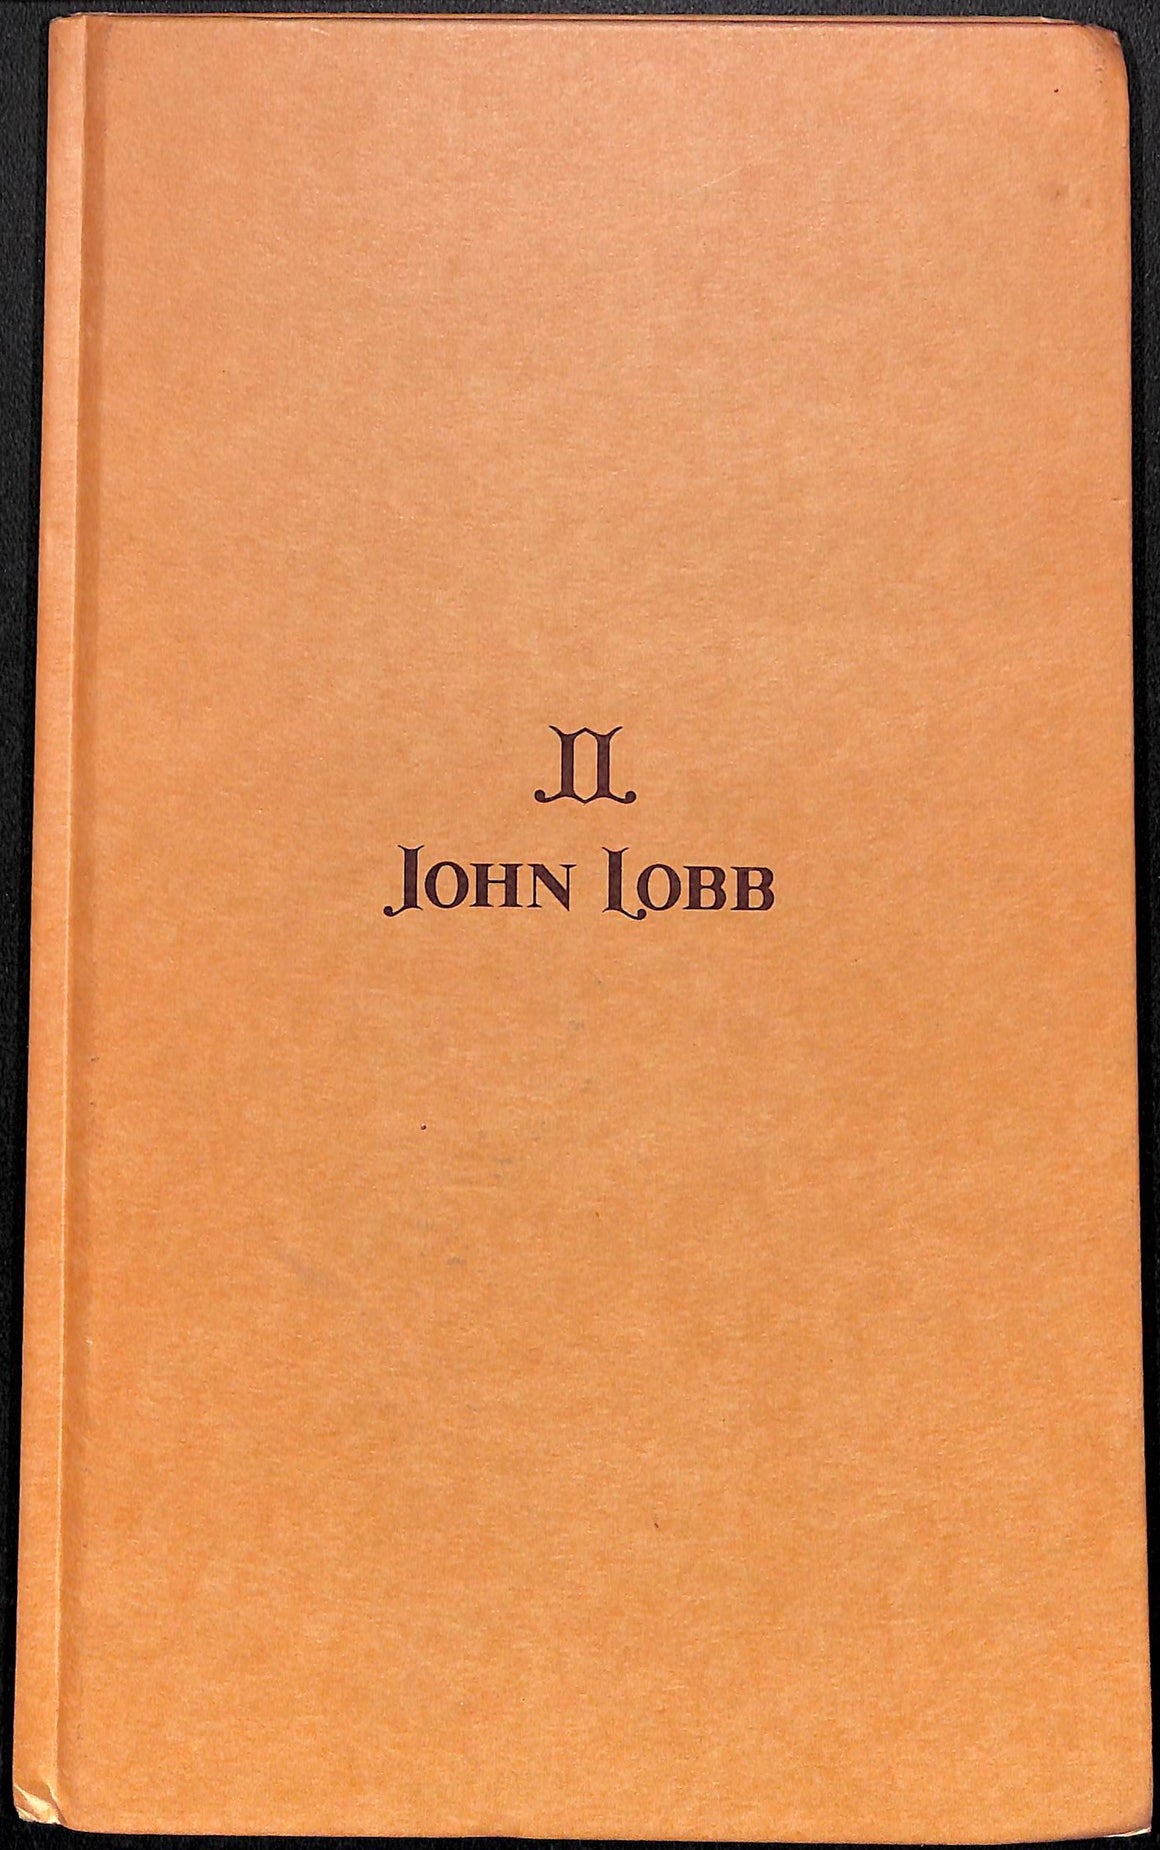 "John Lobb London Shoe/ Boot Catalog" 1999 (SOLD)